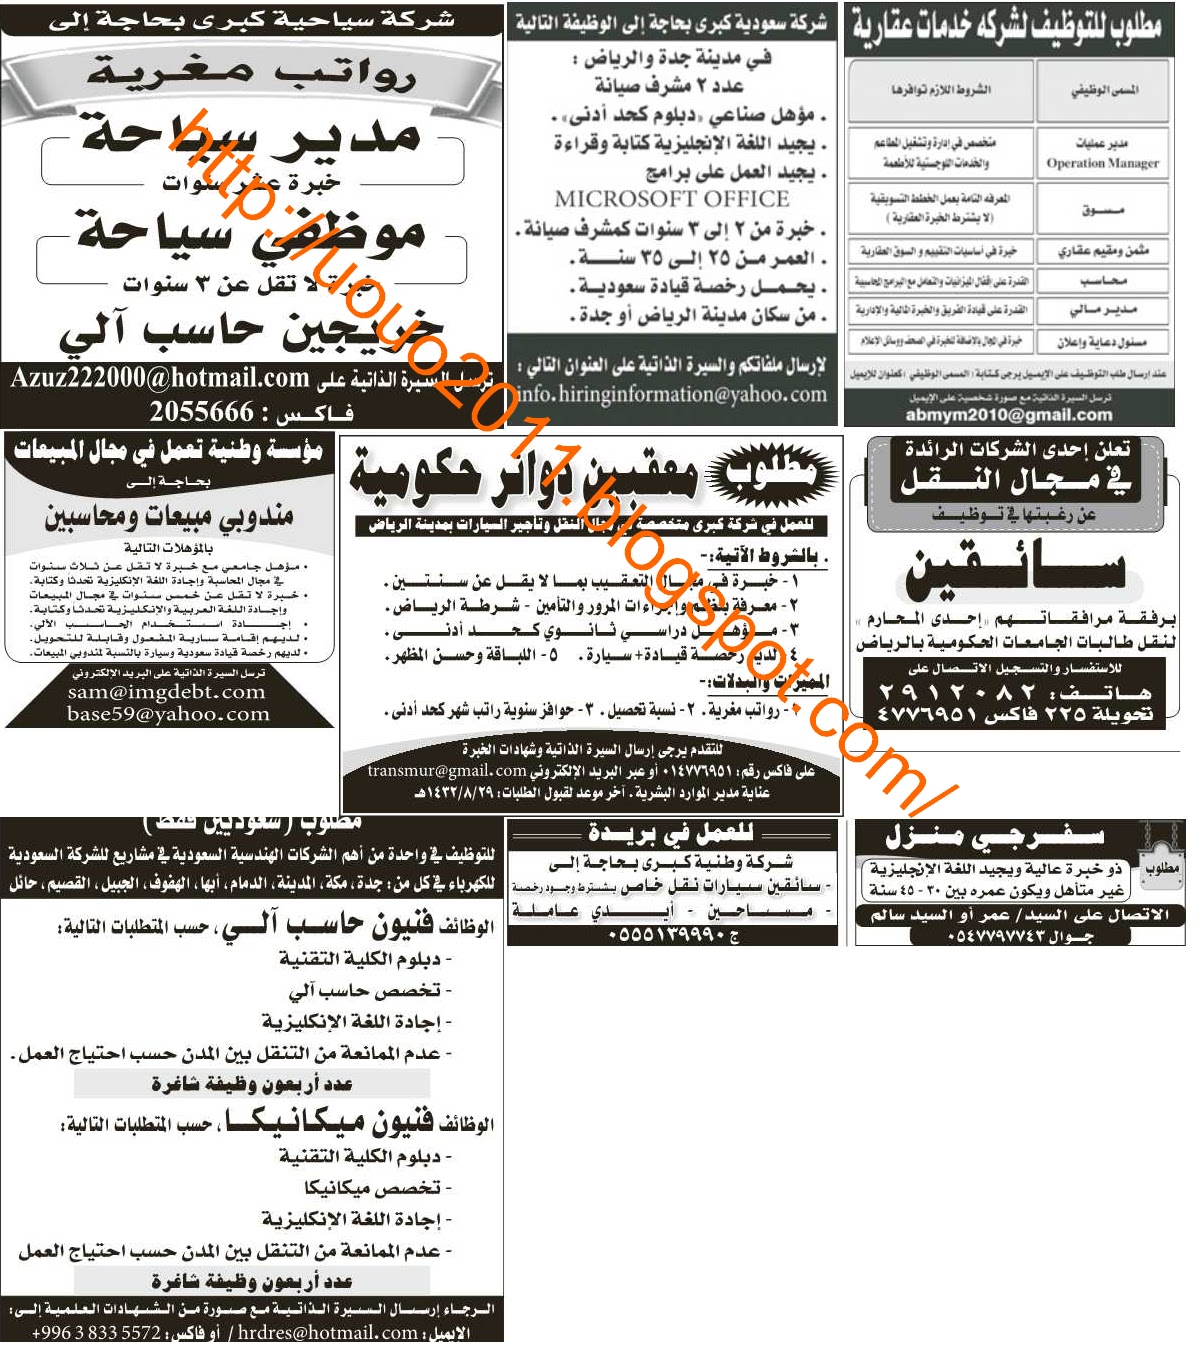  وظائف جريده الرياض - الاربعاء جمادى الاولى 27 ابريل 2011 Untitled